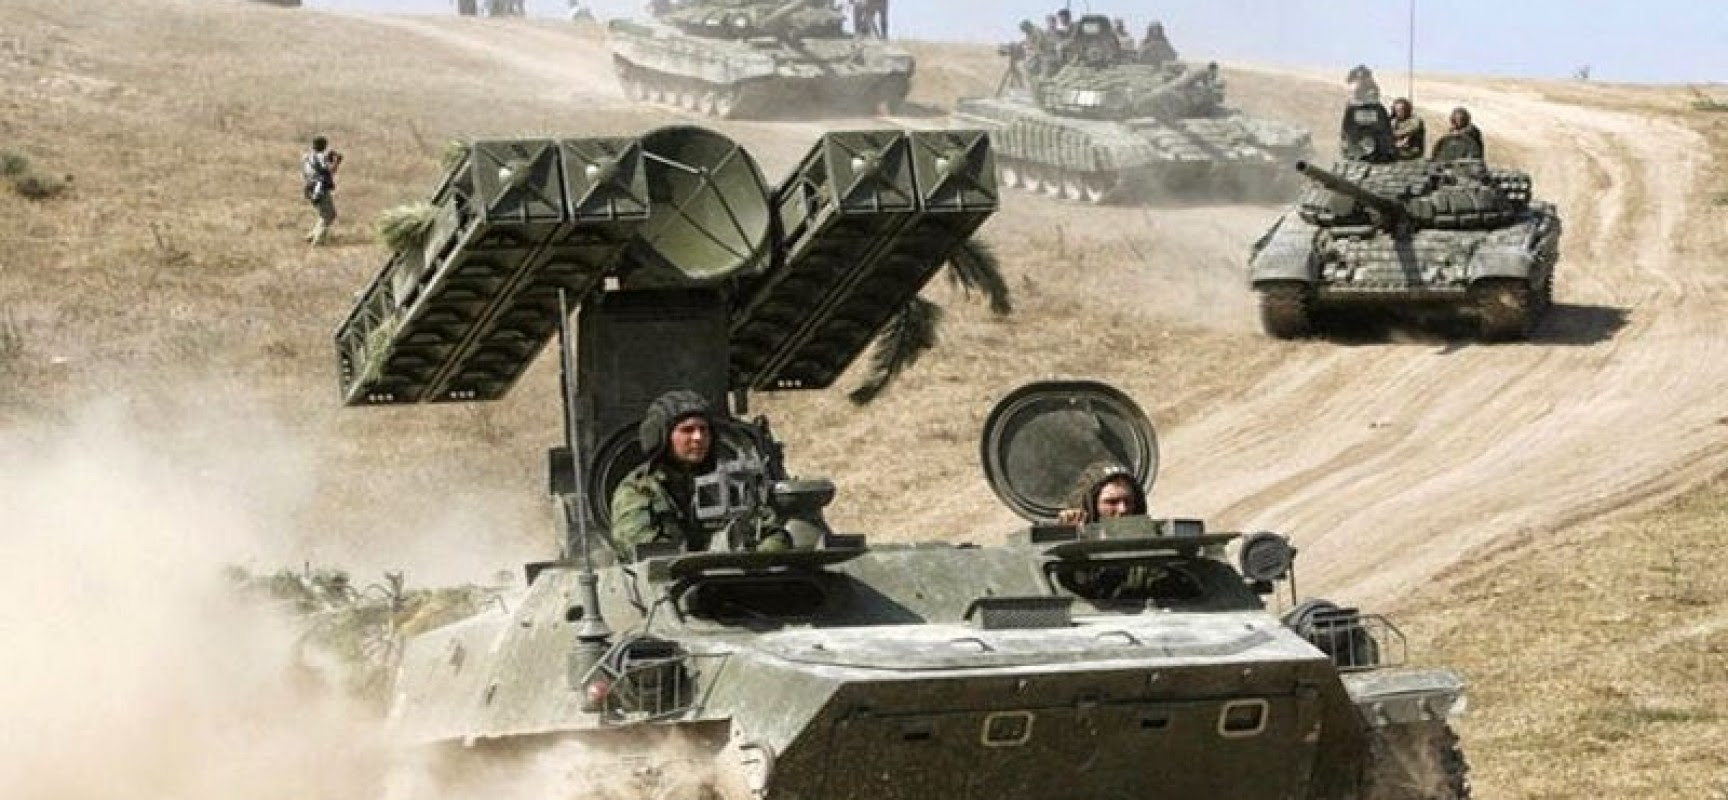 Si l’armée russe envahissait vraiment l’Ukraine, ça se verrait : scénario